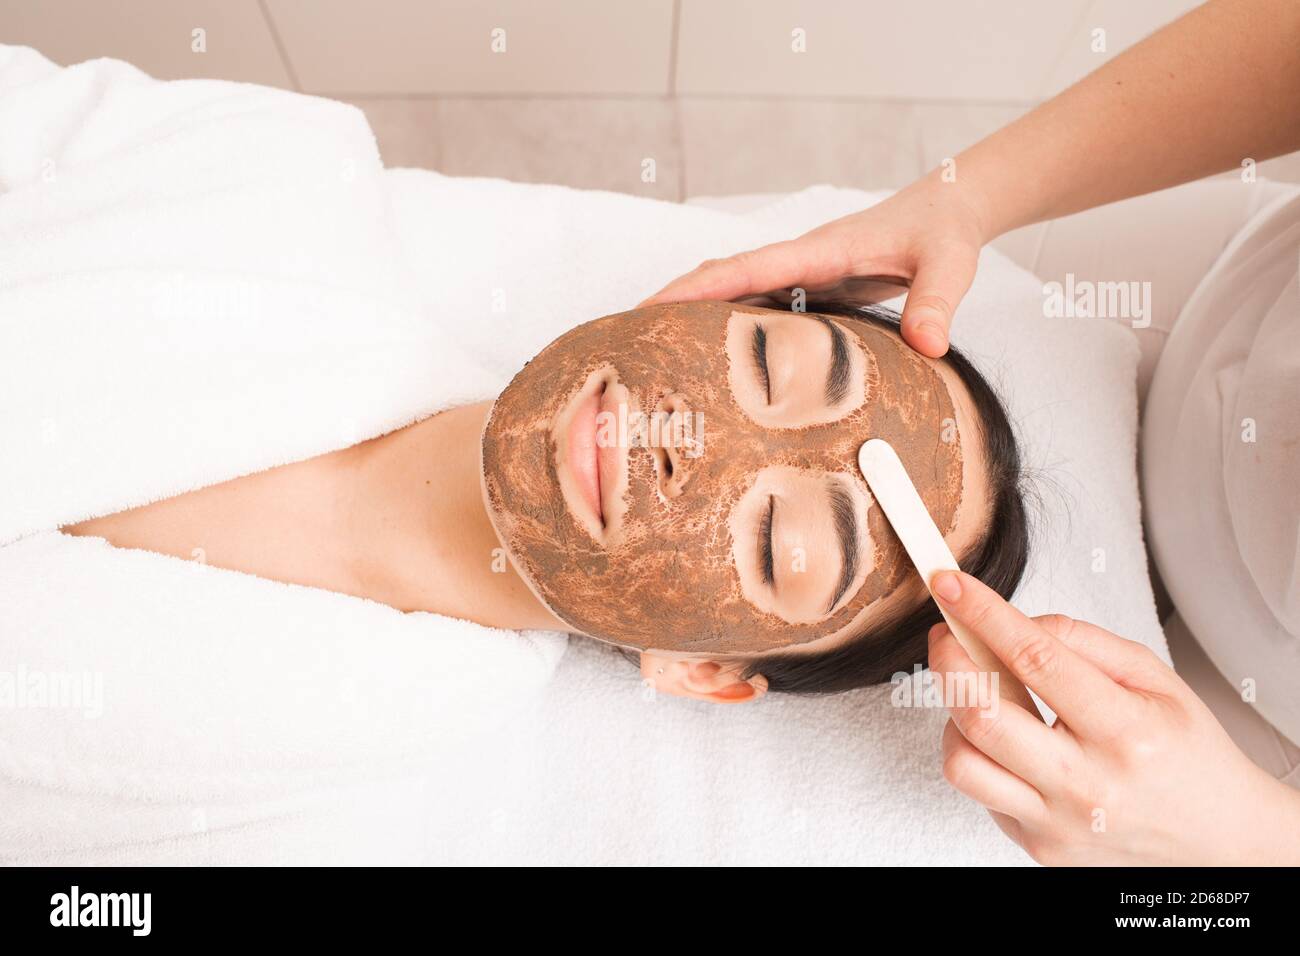 Esthéticienne appliquant un masque de boue sur le visage de la femme. Traitement, nettoyage et adoucissement de la peau. Fait partie d'une série avec masque de boue Banque D'Images